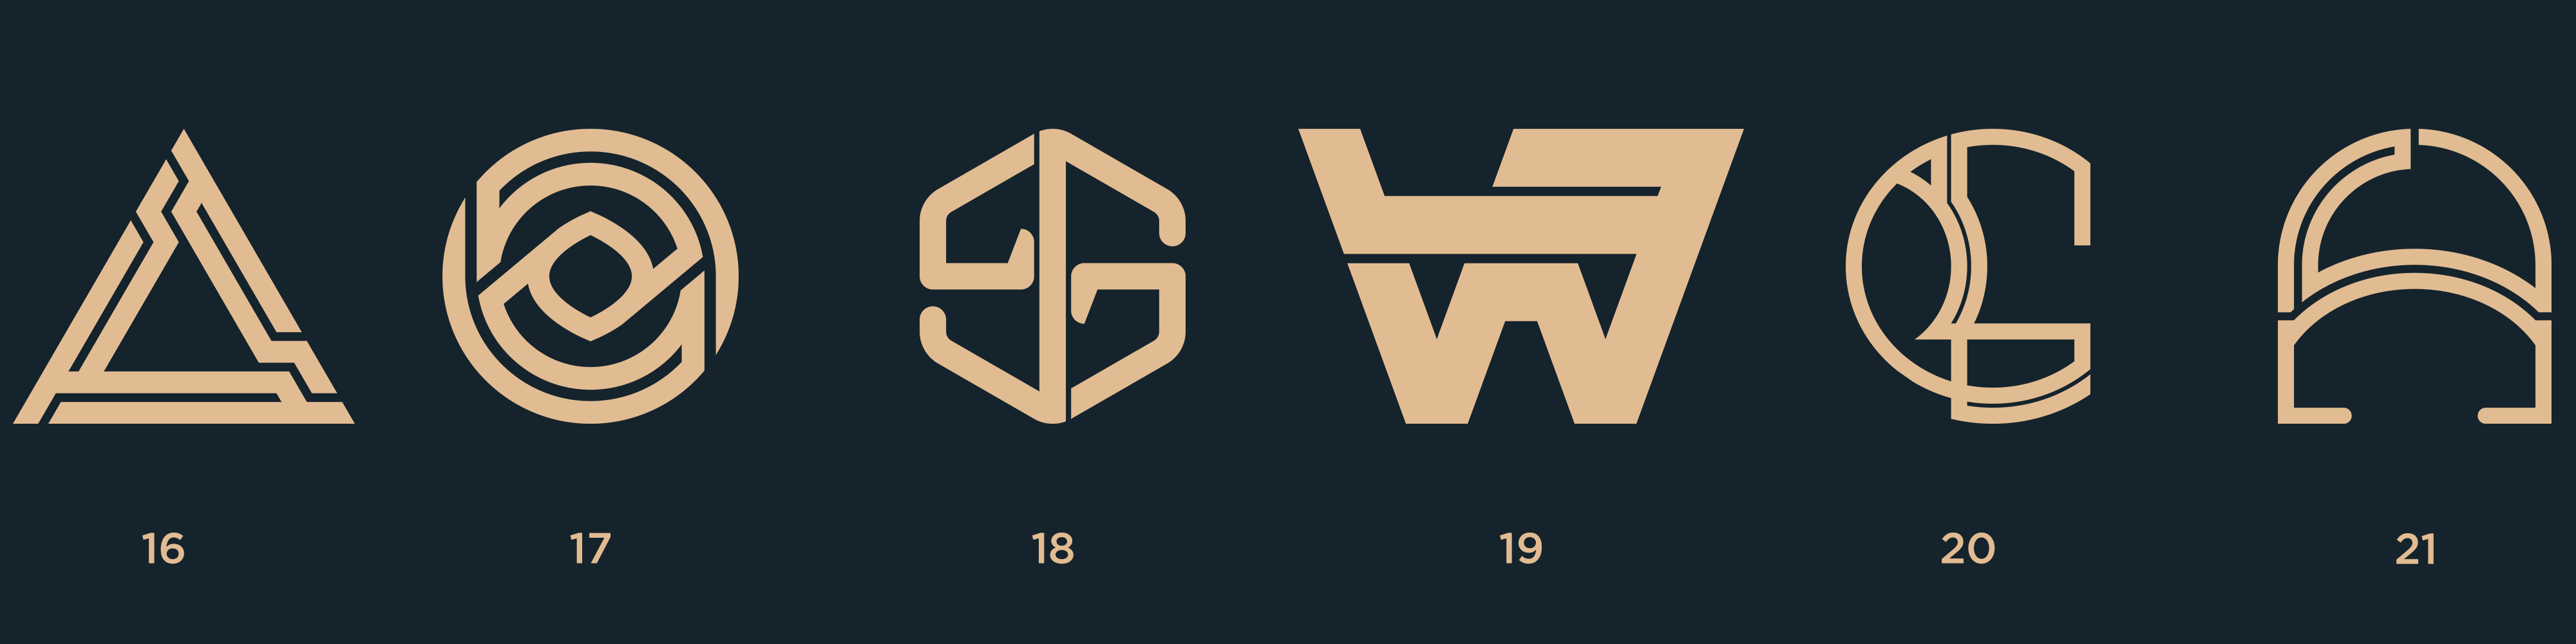 Logotypes C4.png